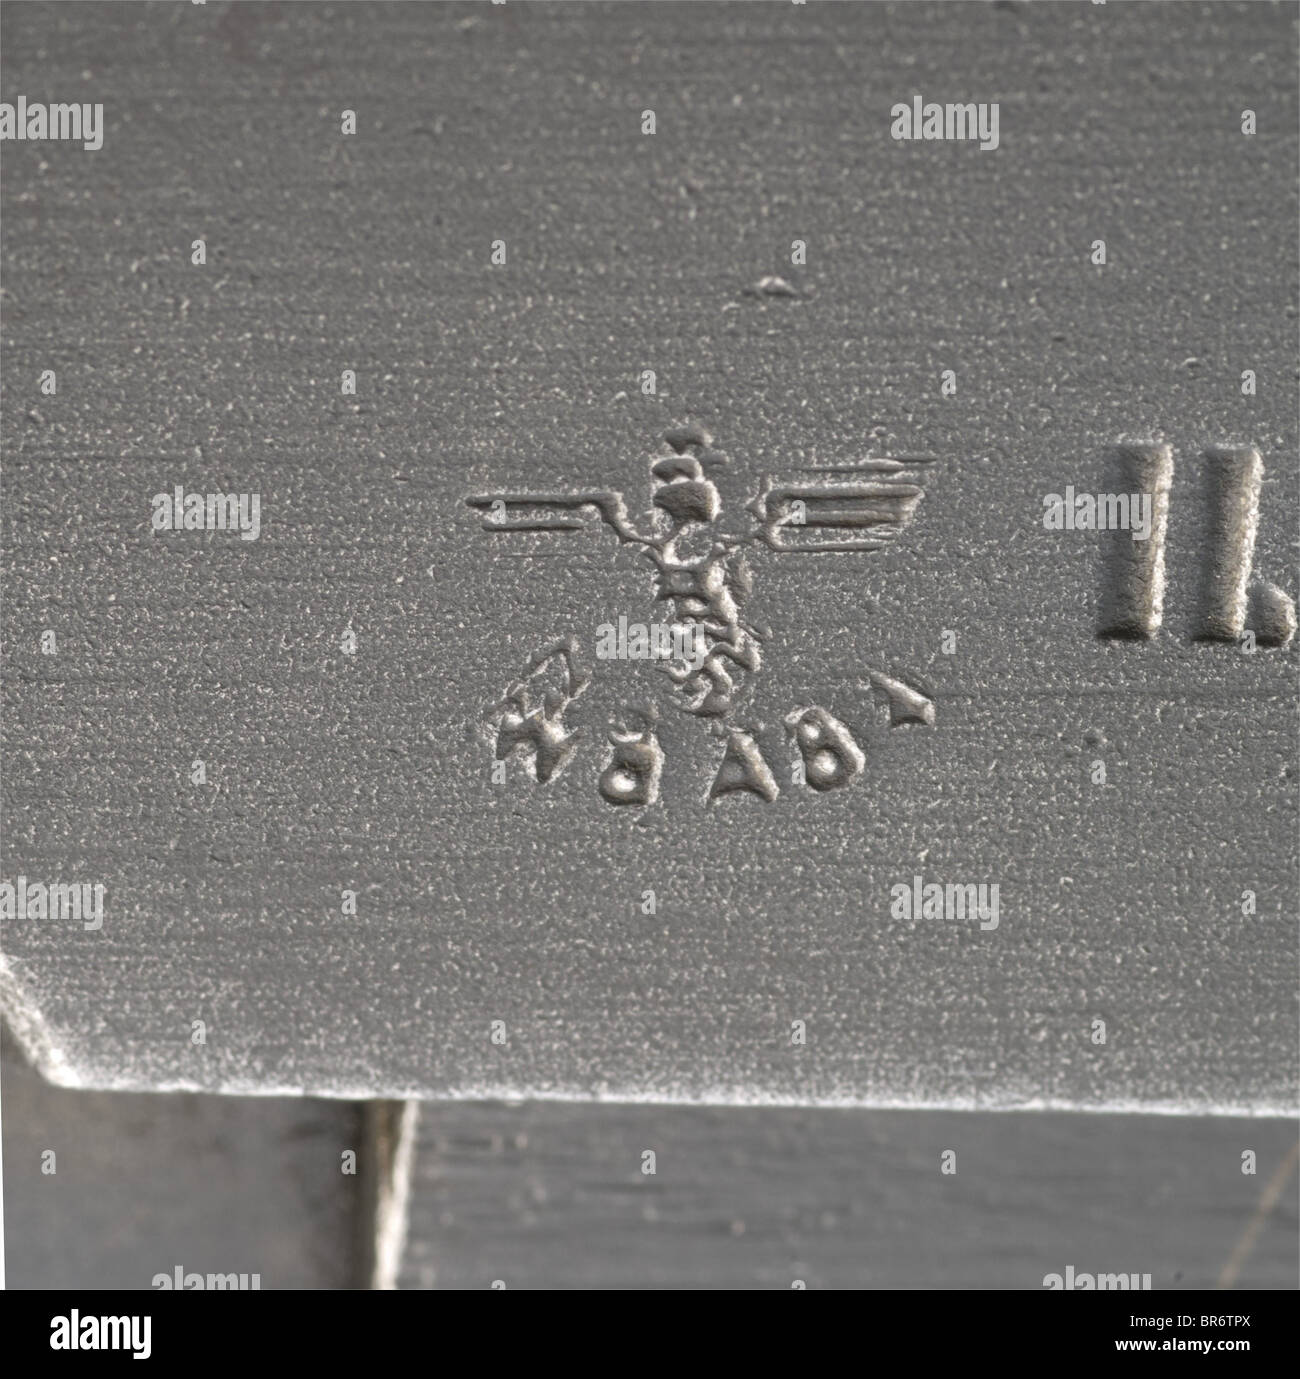 A Colt Kongsberg M 1914, Wehrmacht, .45 ACP cal., n. 29624. Números coincidentes. Calibre casi brillante. A la izquierda de la inscripción estándar del portaobjetos. Frente a ella: Águila de aceptación/'WaA84' en el año de producción '1945'. Estructura de agarre en la fabricación típica tardía y rugosa. Revestimiento de fosfato negro original con marcas de desgaste ligeras, en lugares algo finos y manchados. Paneles de agarre de madera blanda originales teñidos de negro. Corregir el cargador reacabado. Desde la última producción bajo ocupación alemana dentro del supuesto rango de números de serie de 29621 - 30535, por lo tanto sólo 935 armas. spo en alemán, Foto de stock